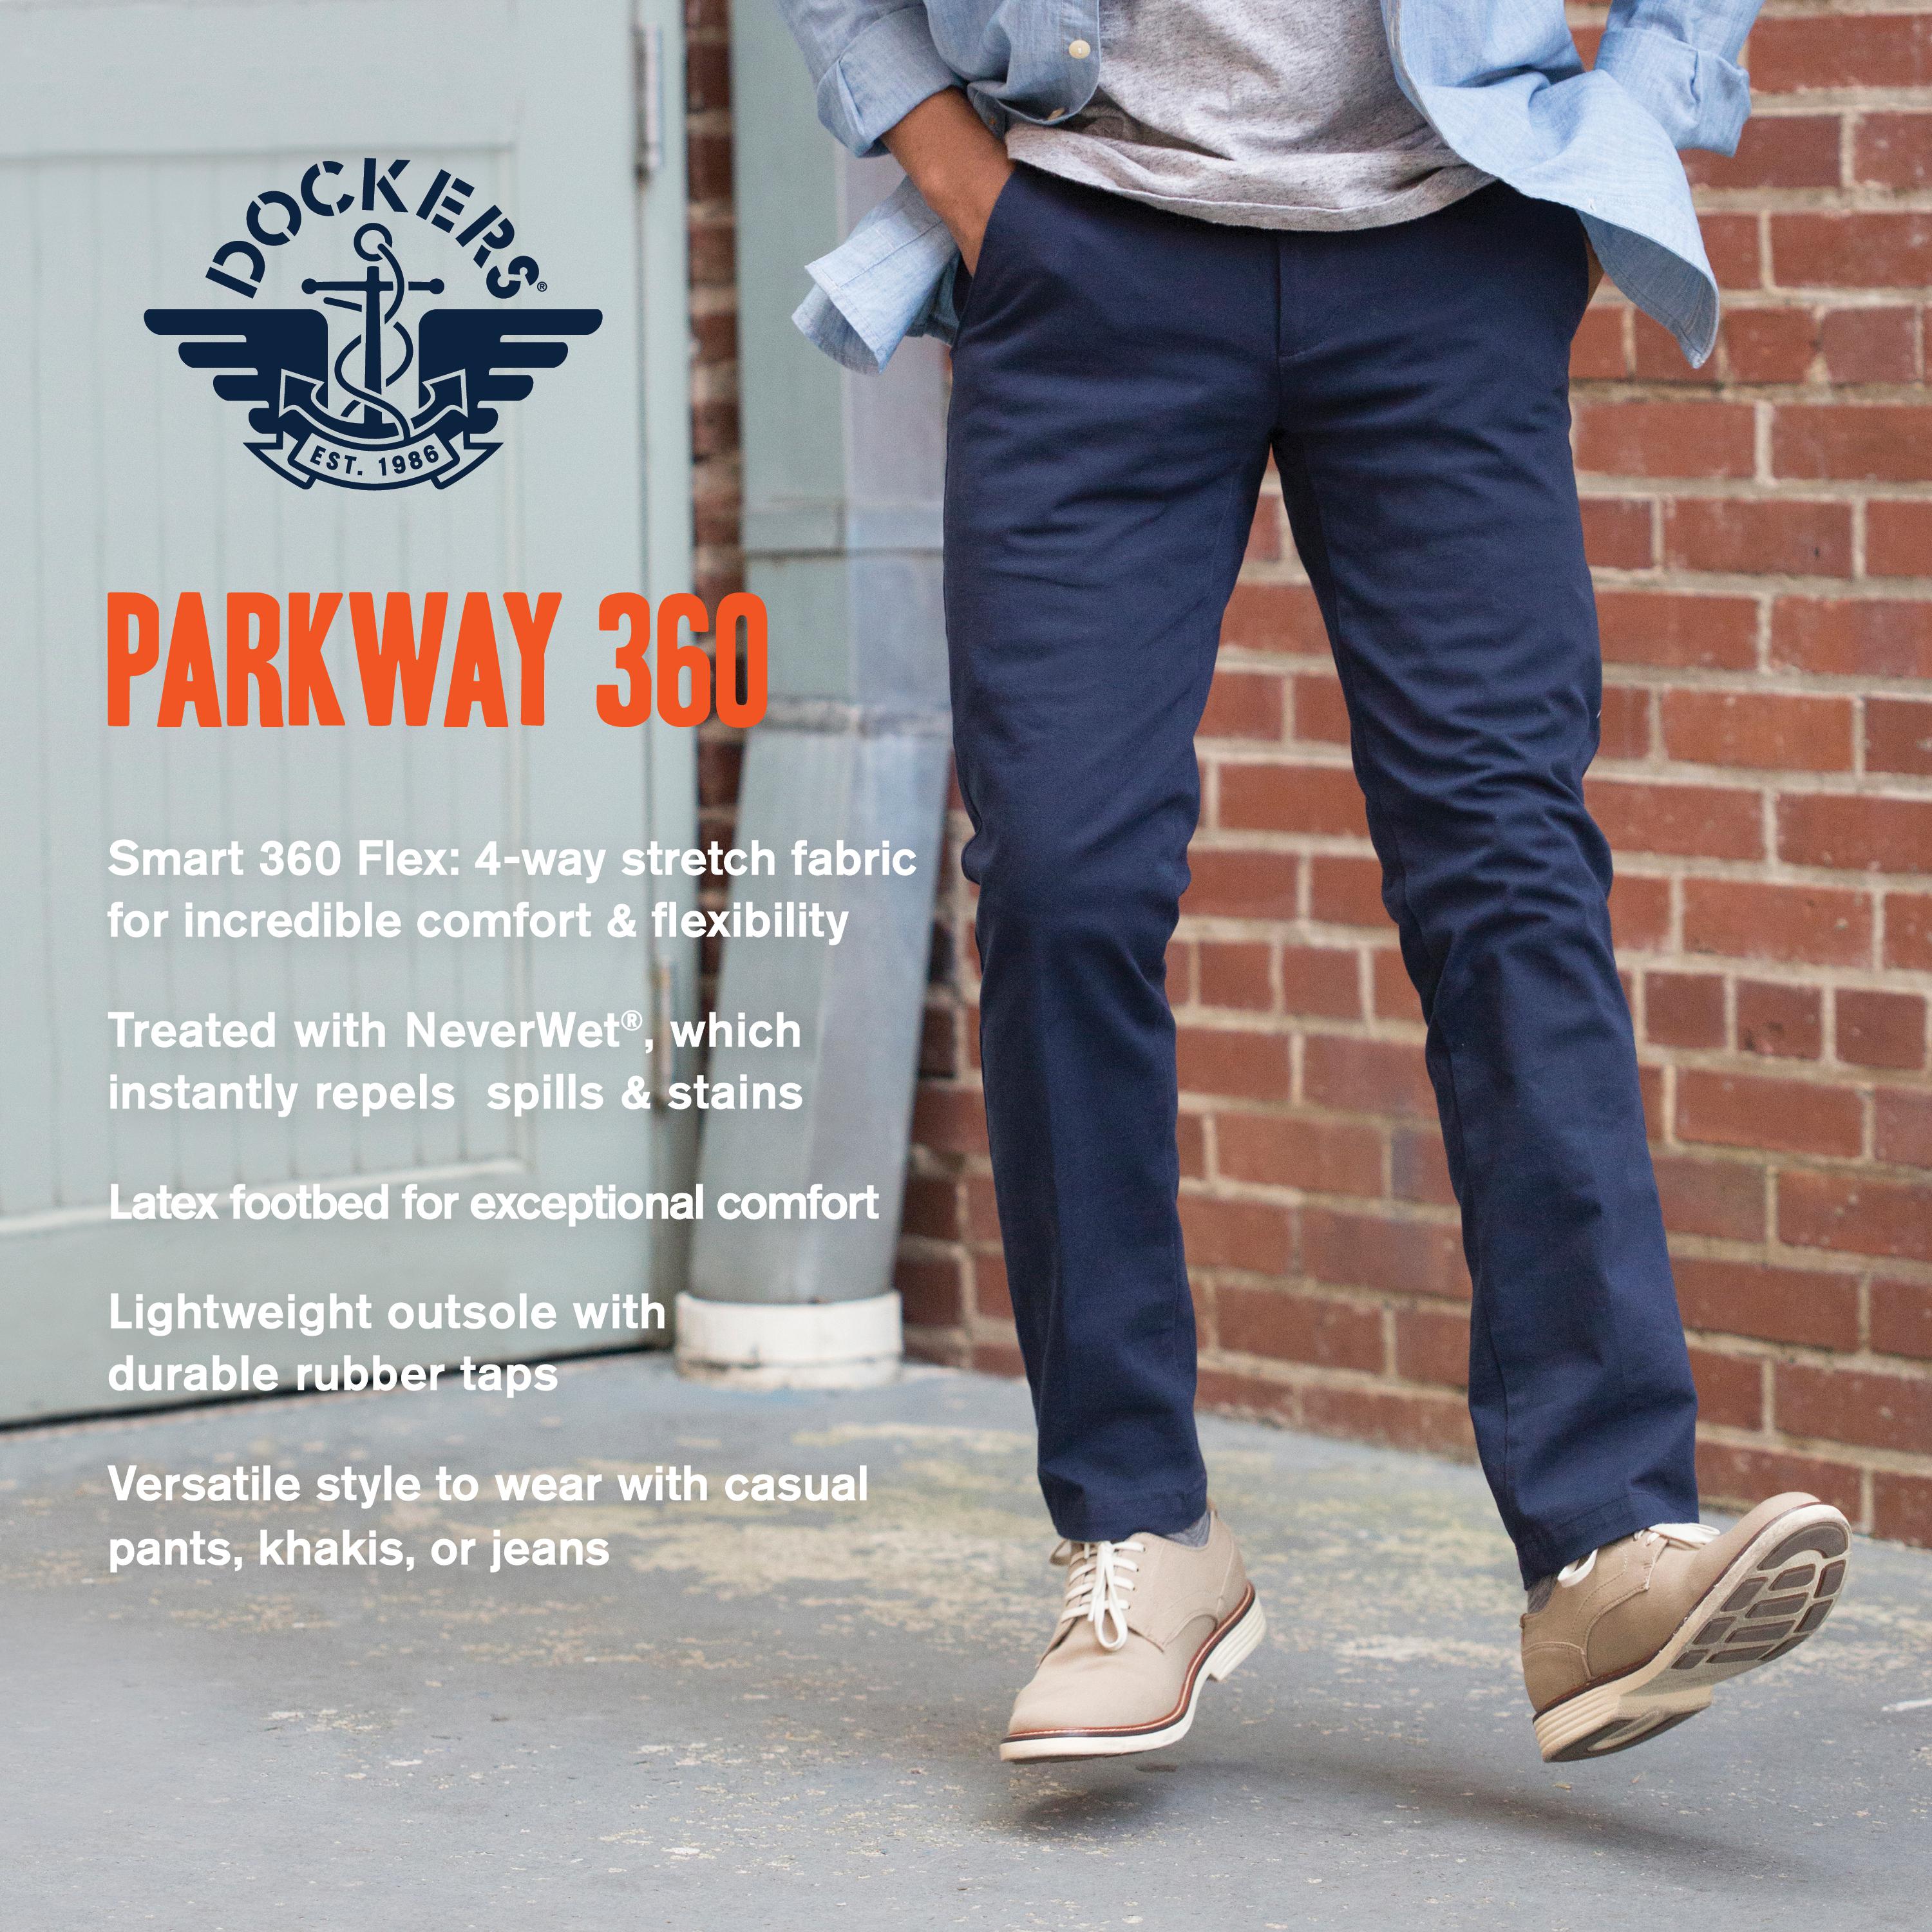 dockers parkway 360